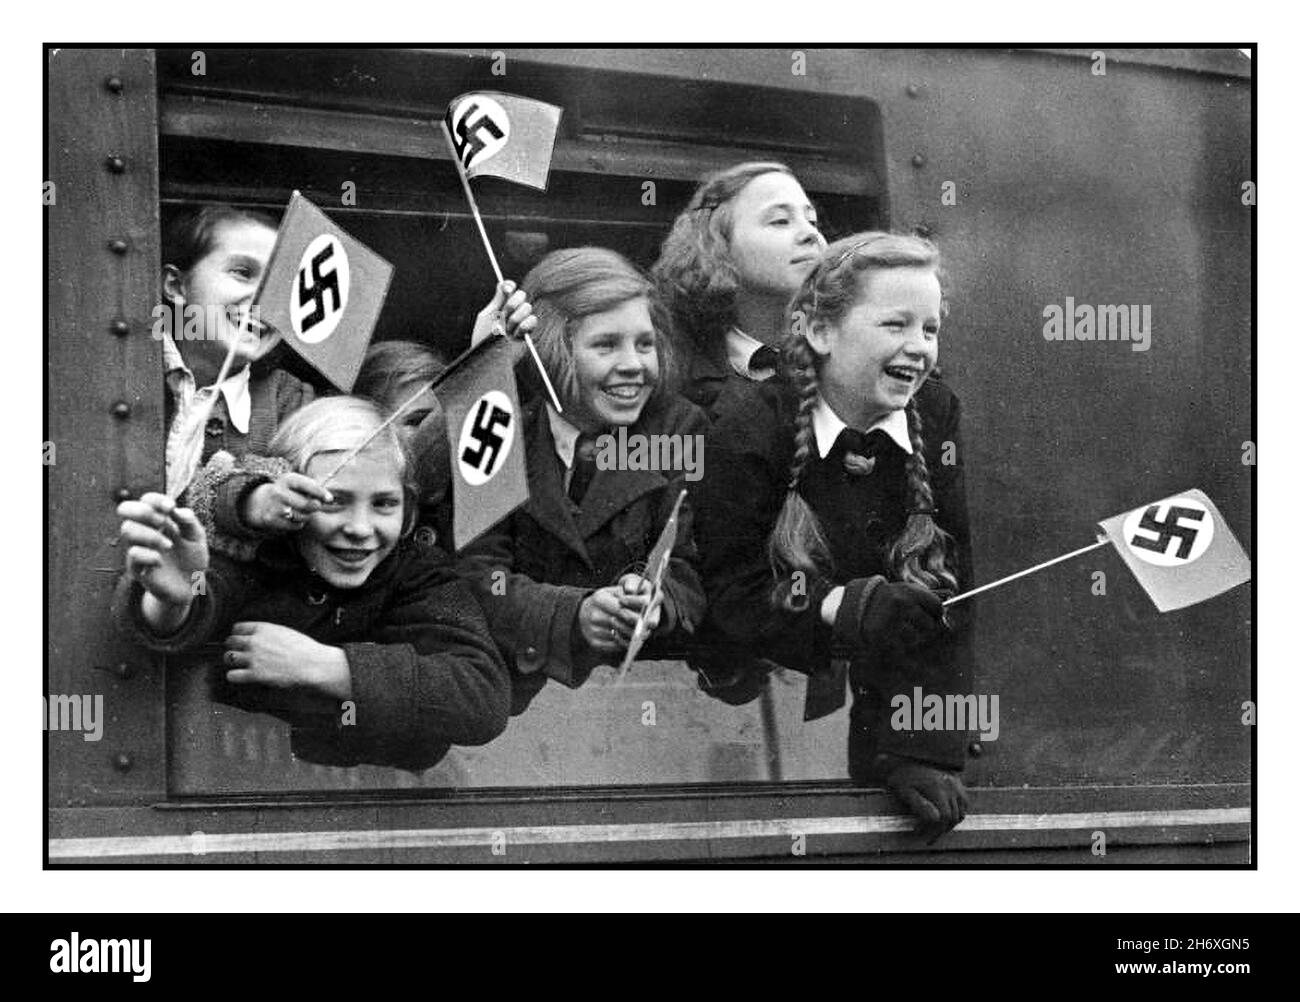 WW2 NAZI-DEUTSCHLAND-KINDERTRANSPORT KINDERTRANSPORTE KINDERLANDVERSCHICKUNG WW2 1940s Evakuierungen von Kindern in Deutschland während des Zweiten Weltkriegs verlassen deutsche Kinder Berlin im Sonderzug Kindertransporte winkende Nazi-Hakenkreuzflaggen Täglich neue Kindertransporte aus allen Teilen der Bevölkerung der Reichshauptstadt als Teil des Überlandes Deportation in andere Bezirke des Nazi-Deutschen Reiches, um sie vor alliierten Bombenangriffen DEUTSCHER KINDER zu schützen WW2 Kinder Transport Vintage WW2 Nazi-Deutschland ‘ Kinderlandverschickung’ Propagandaplakat von 1942-1943. Alliierte Bombardierung deutscher Städte Stockfoto